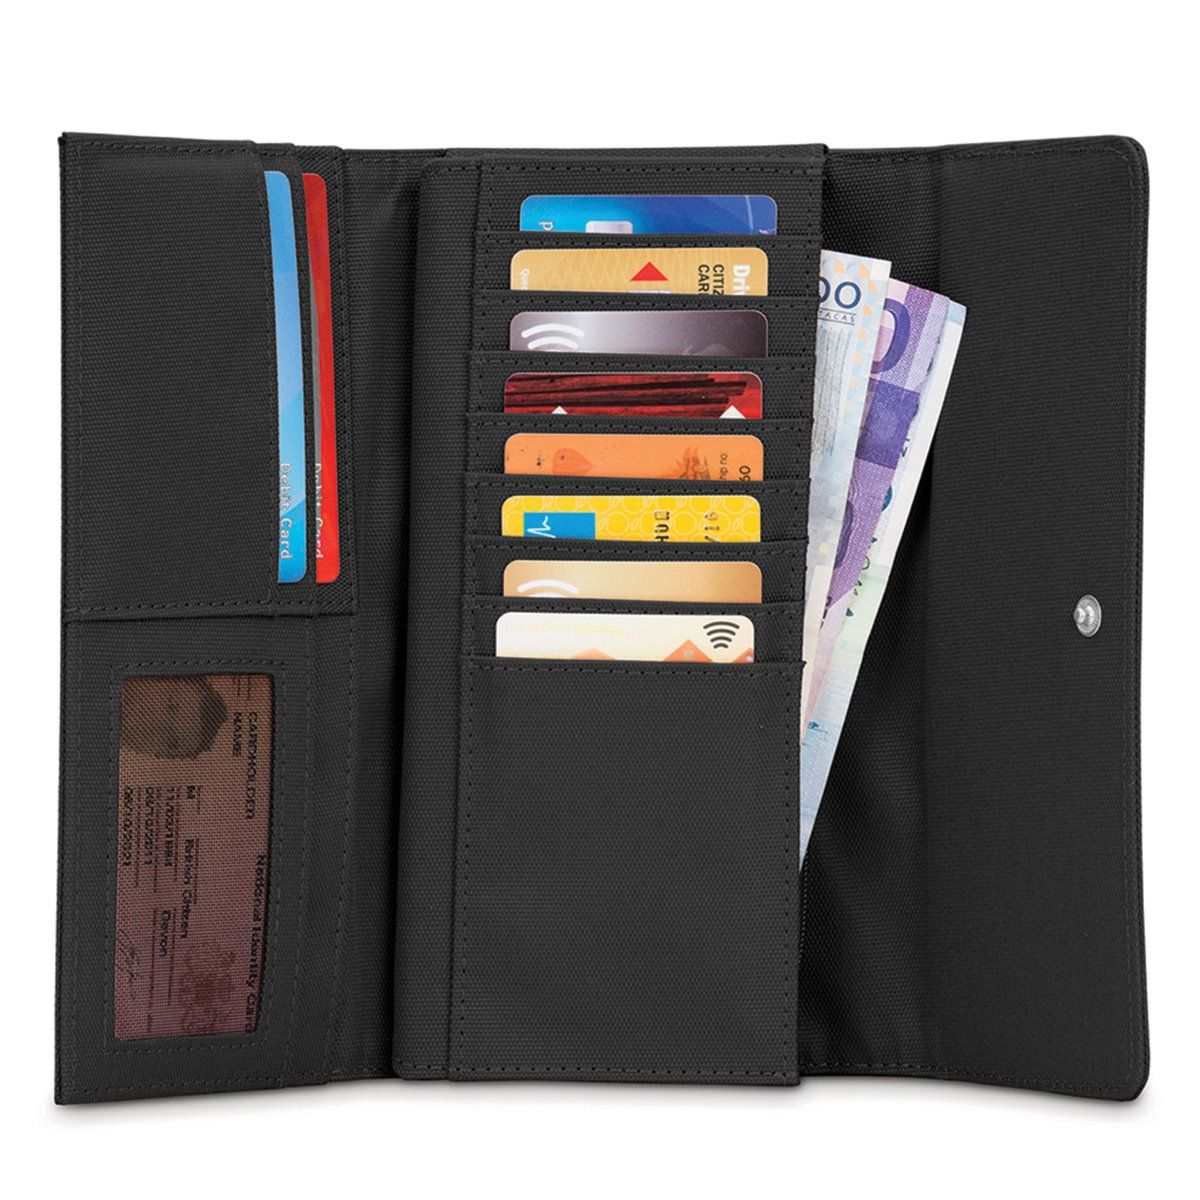 Pacsafe RFID Safe LX200 Travel Wallet Black